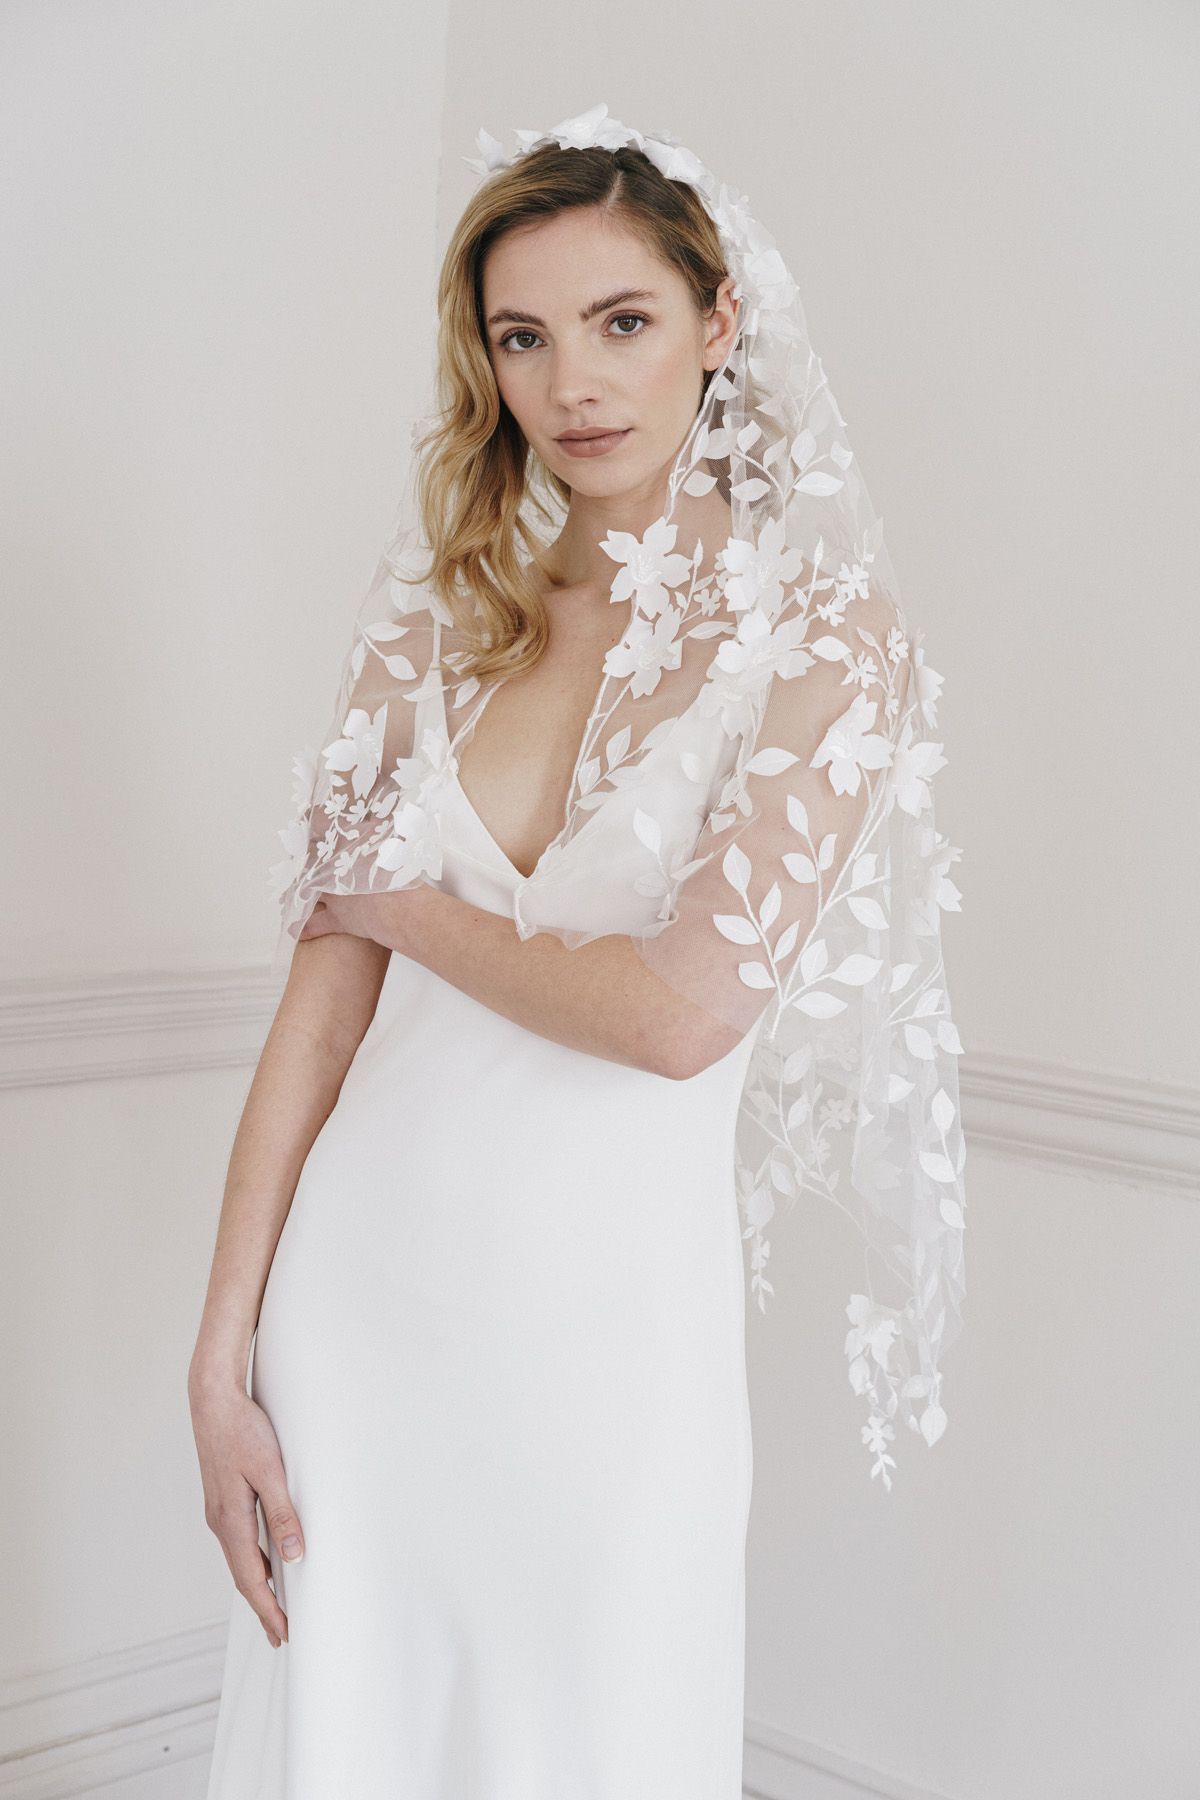 85 Ashley Wild Bridal modern veils accessories